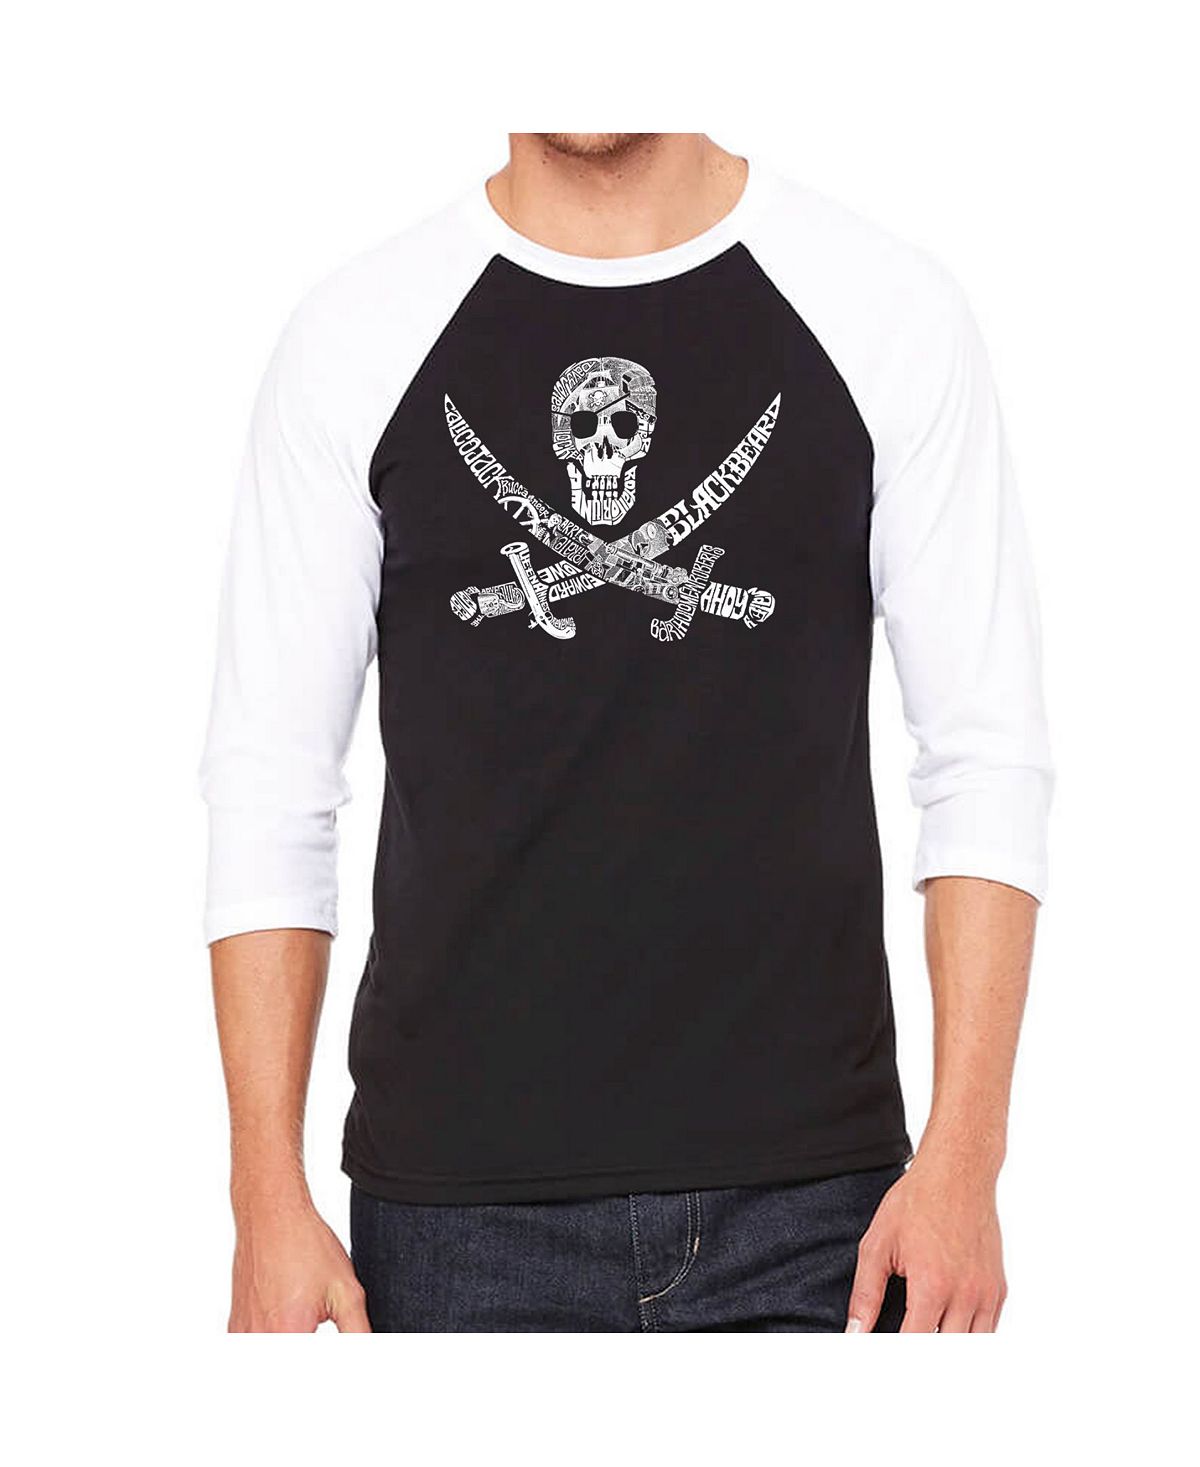 Мужская футболка с принтом пиратский череп и регланом word art LA Pop Art, черный мужская футболка с принтом пиратский череп и регланом word art la pop art черный